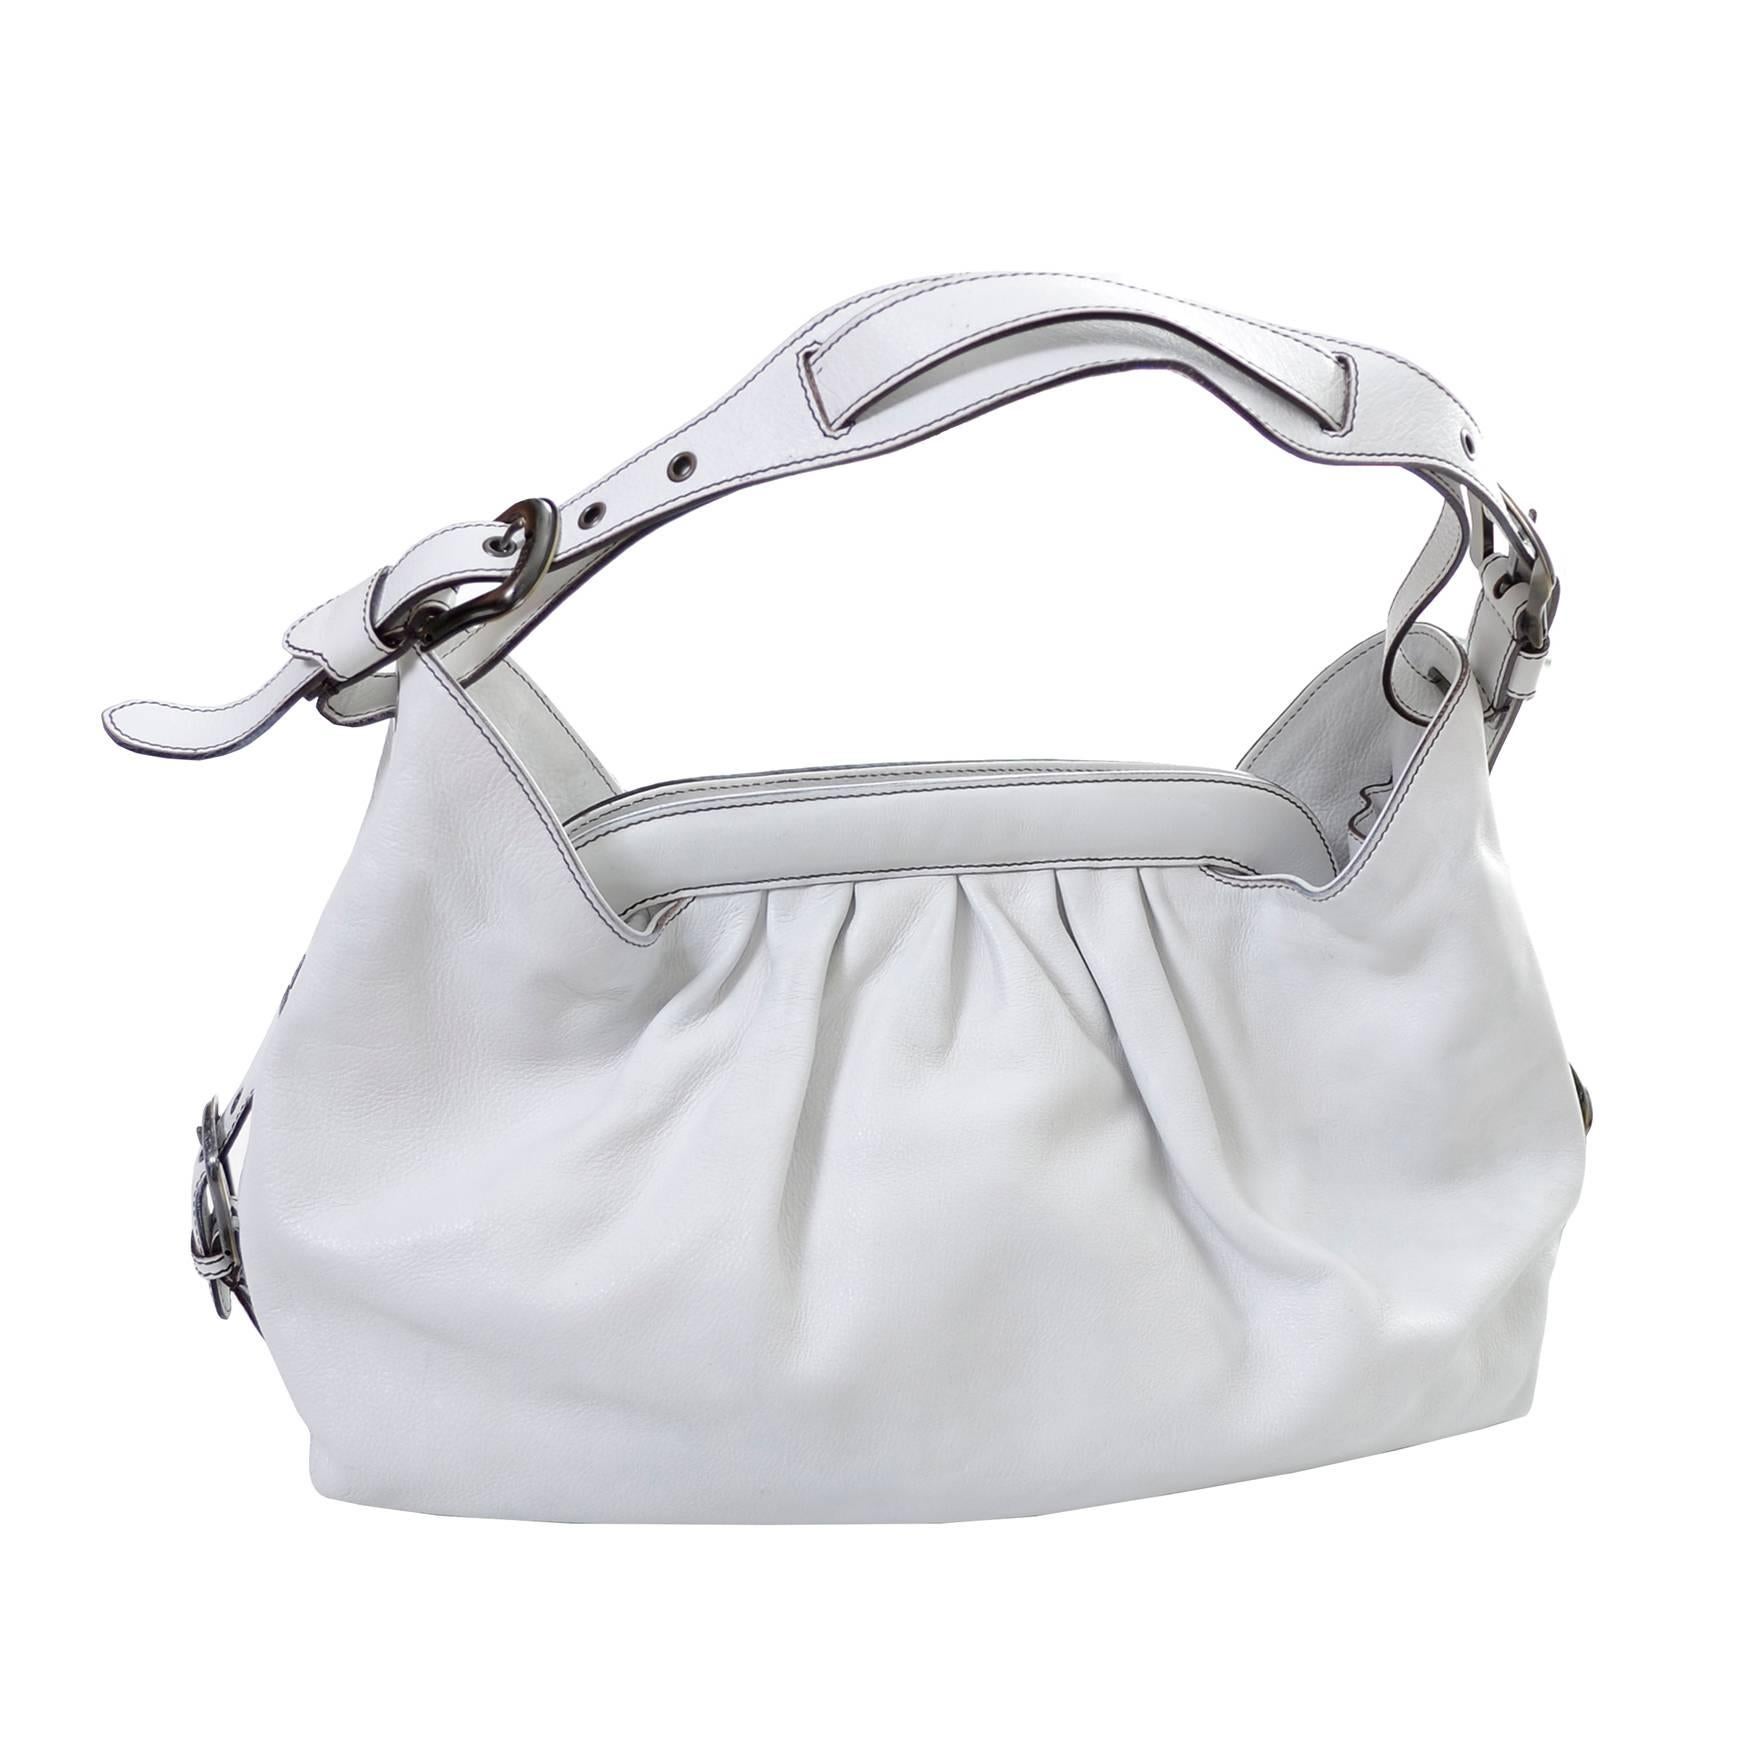 Fendi Borsa Bag White Leather Doctor Hobo Handbag